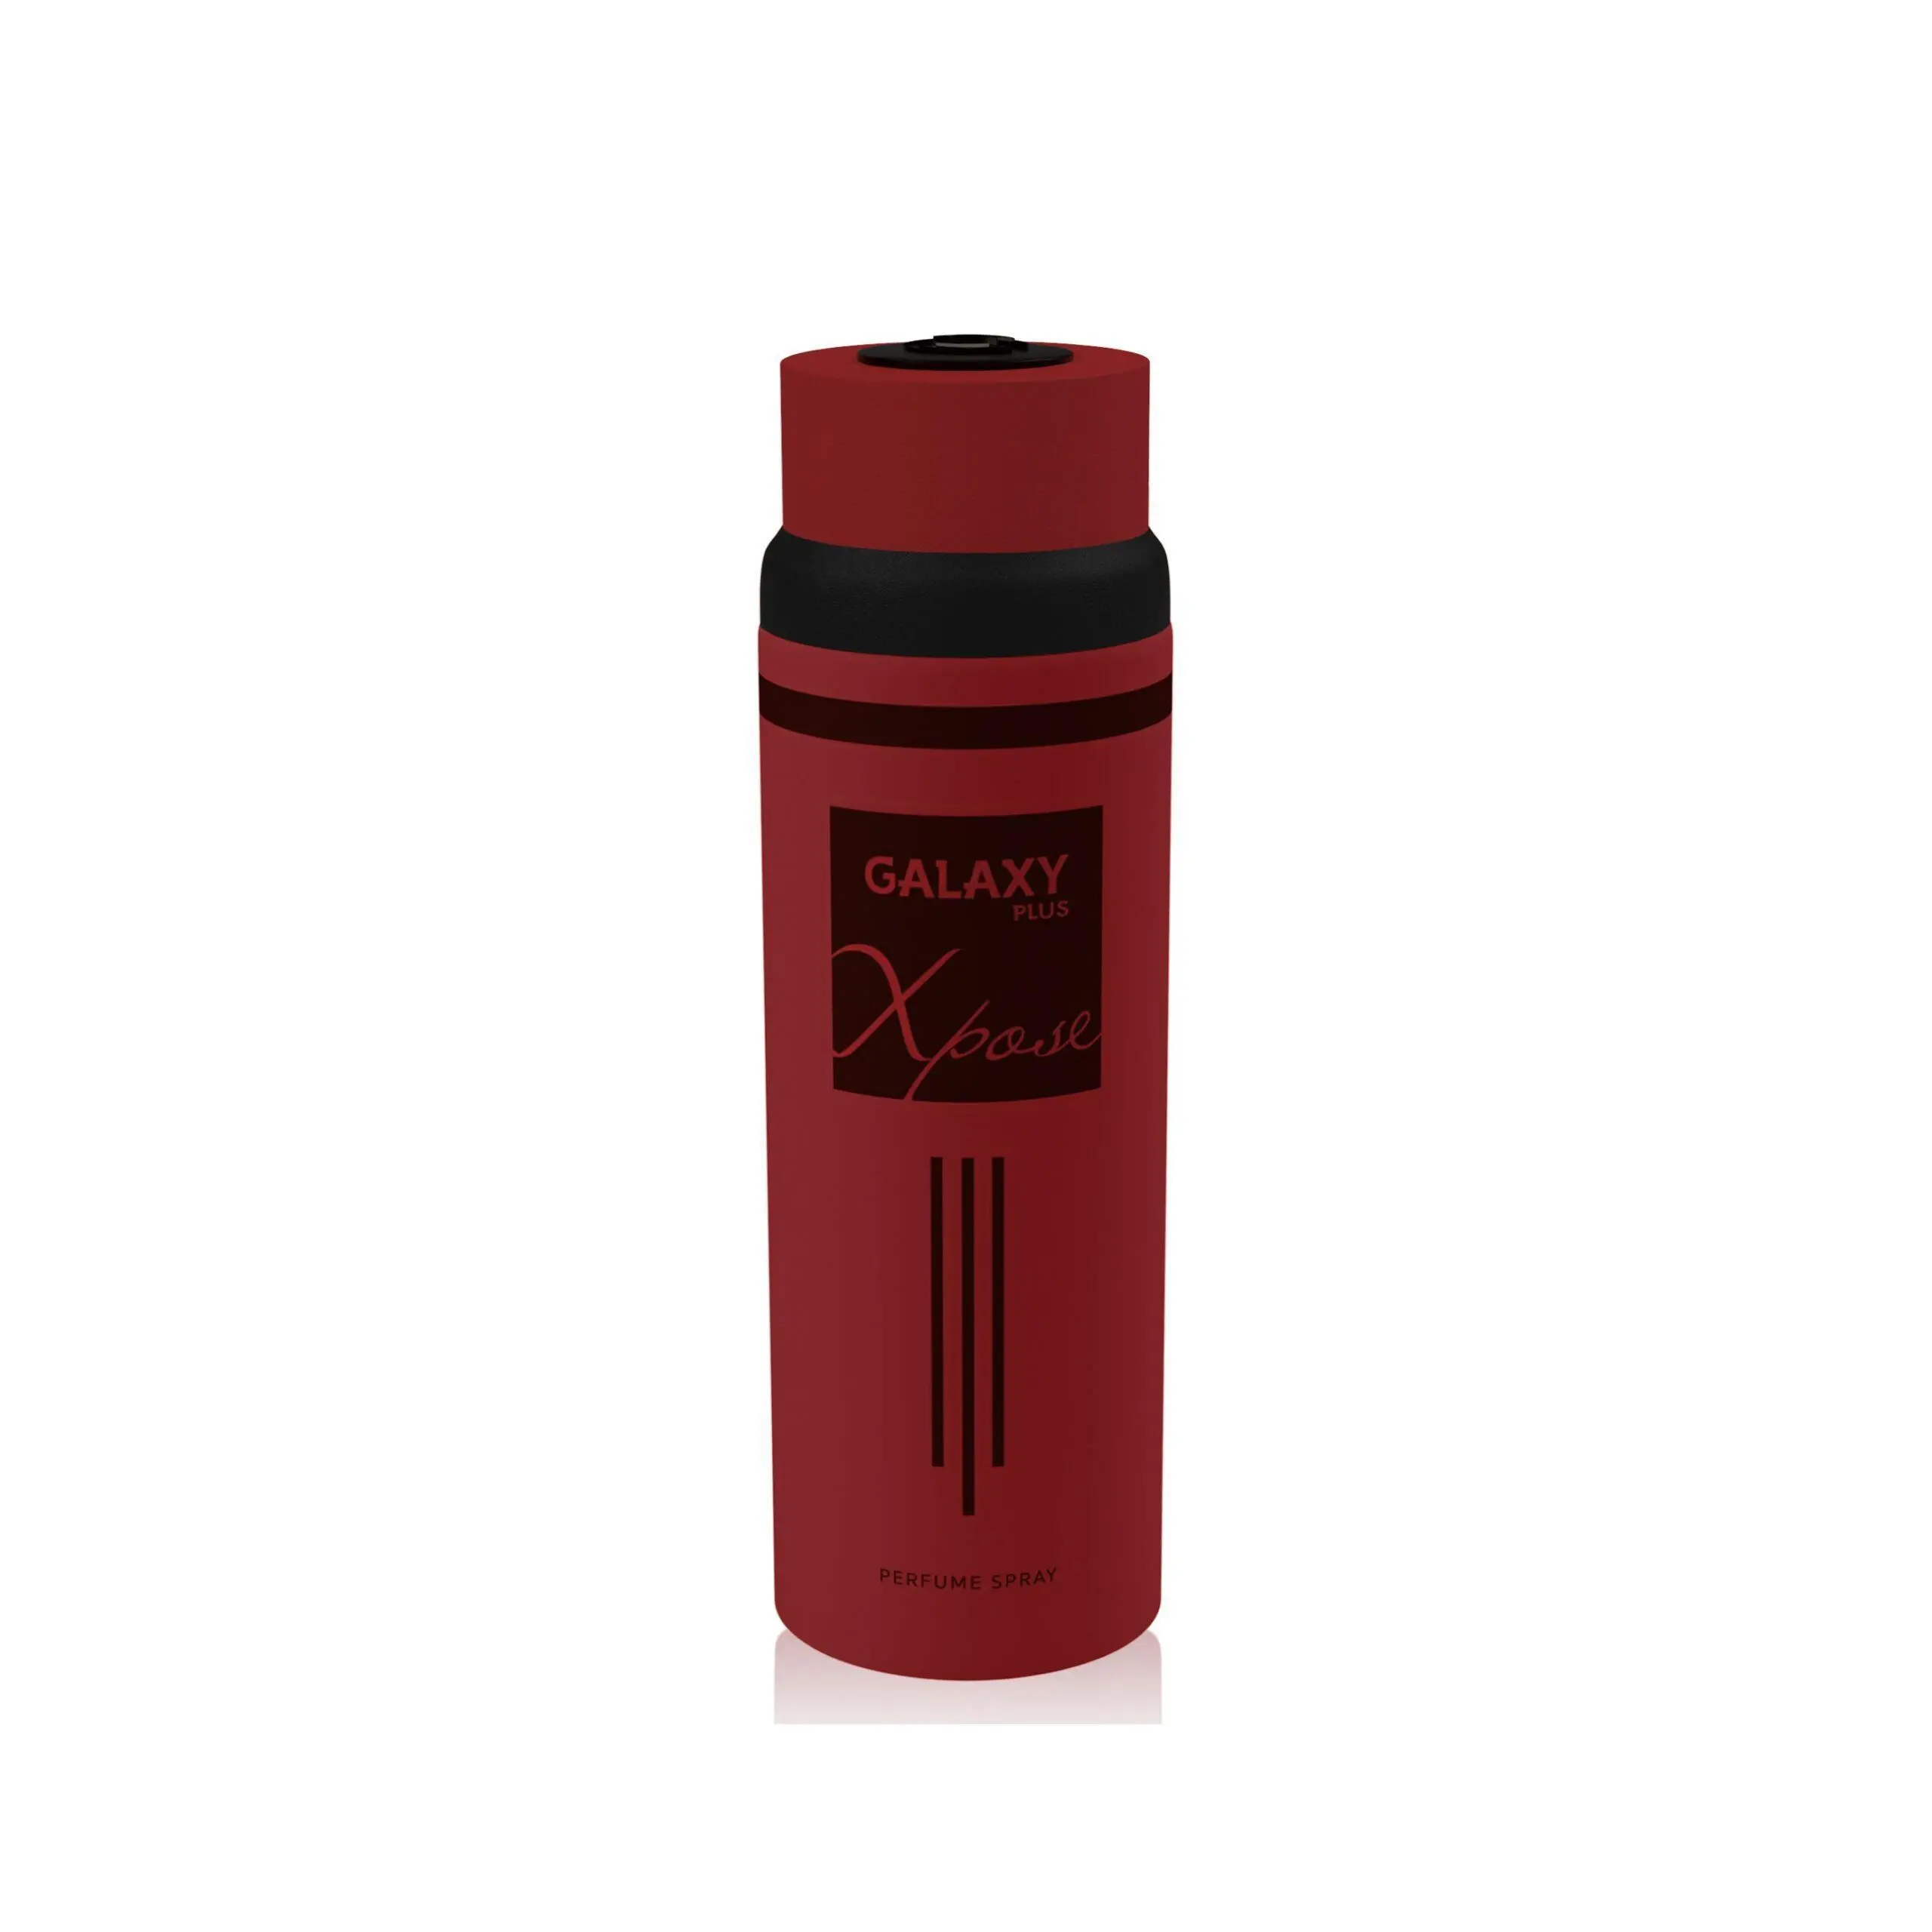 Galaxy Plus Xpose Red 200Ml Perfume Spray